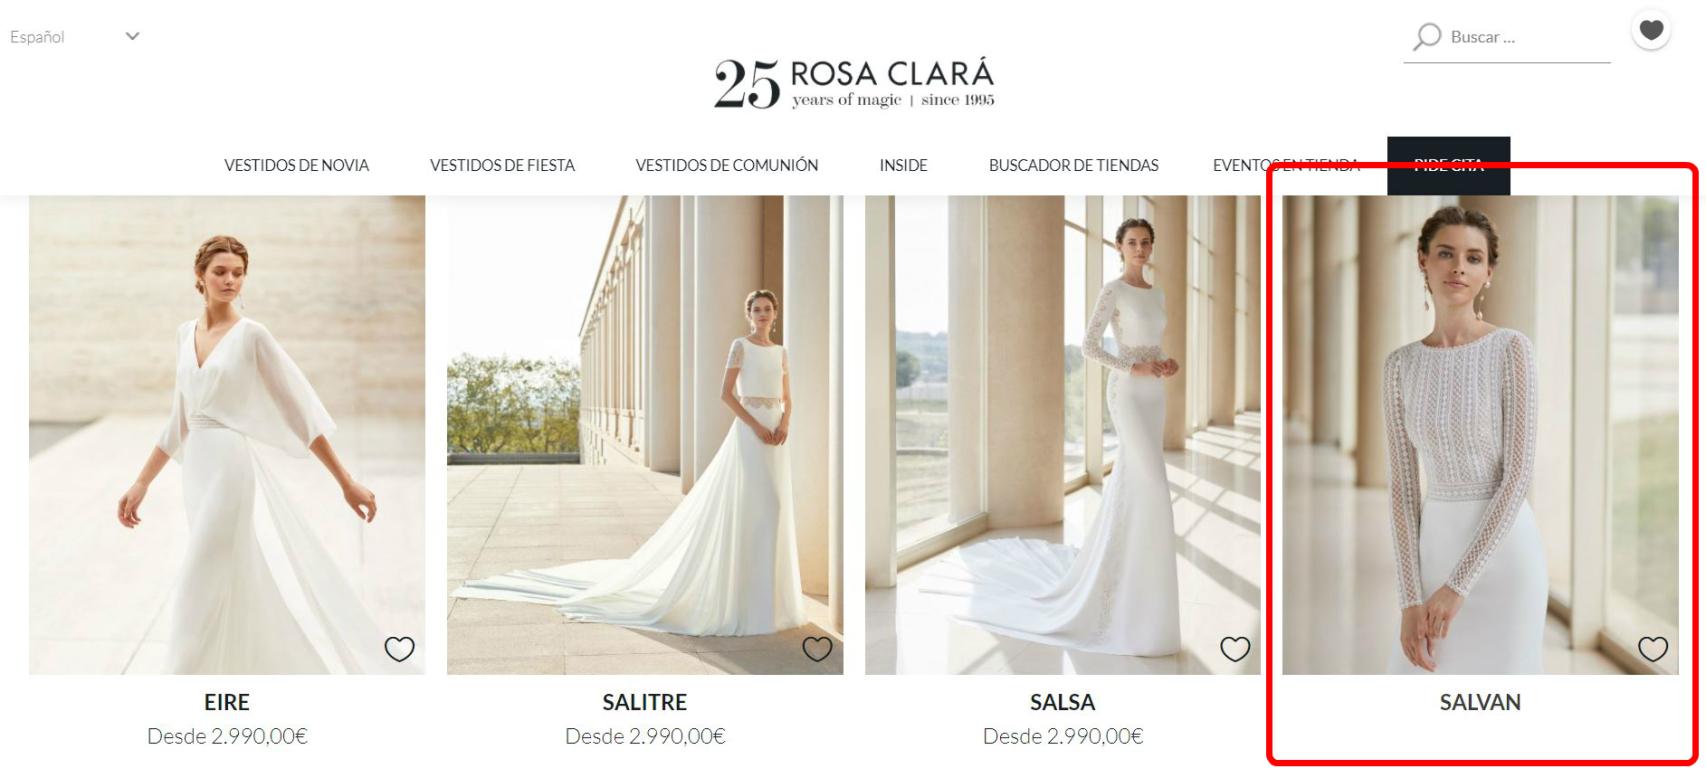 El diseño de Xisca, curiosamente, es el único que no presenta precio en la web oficial de Rosa Clará.